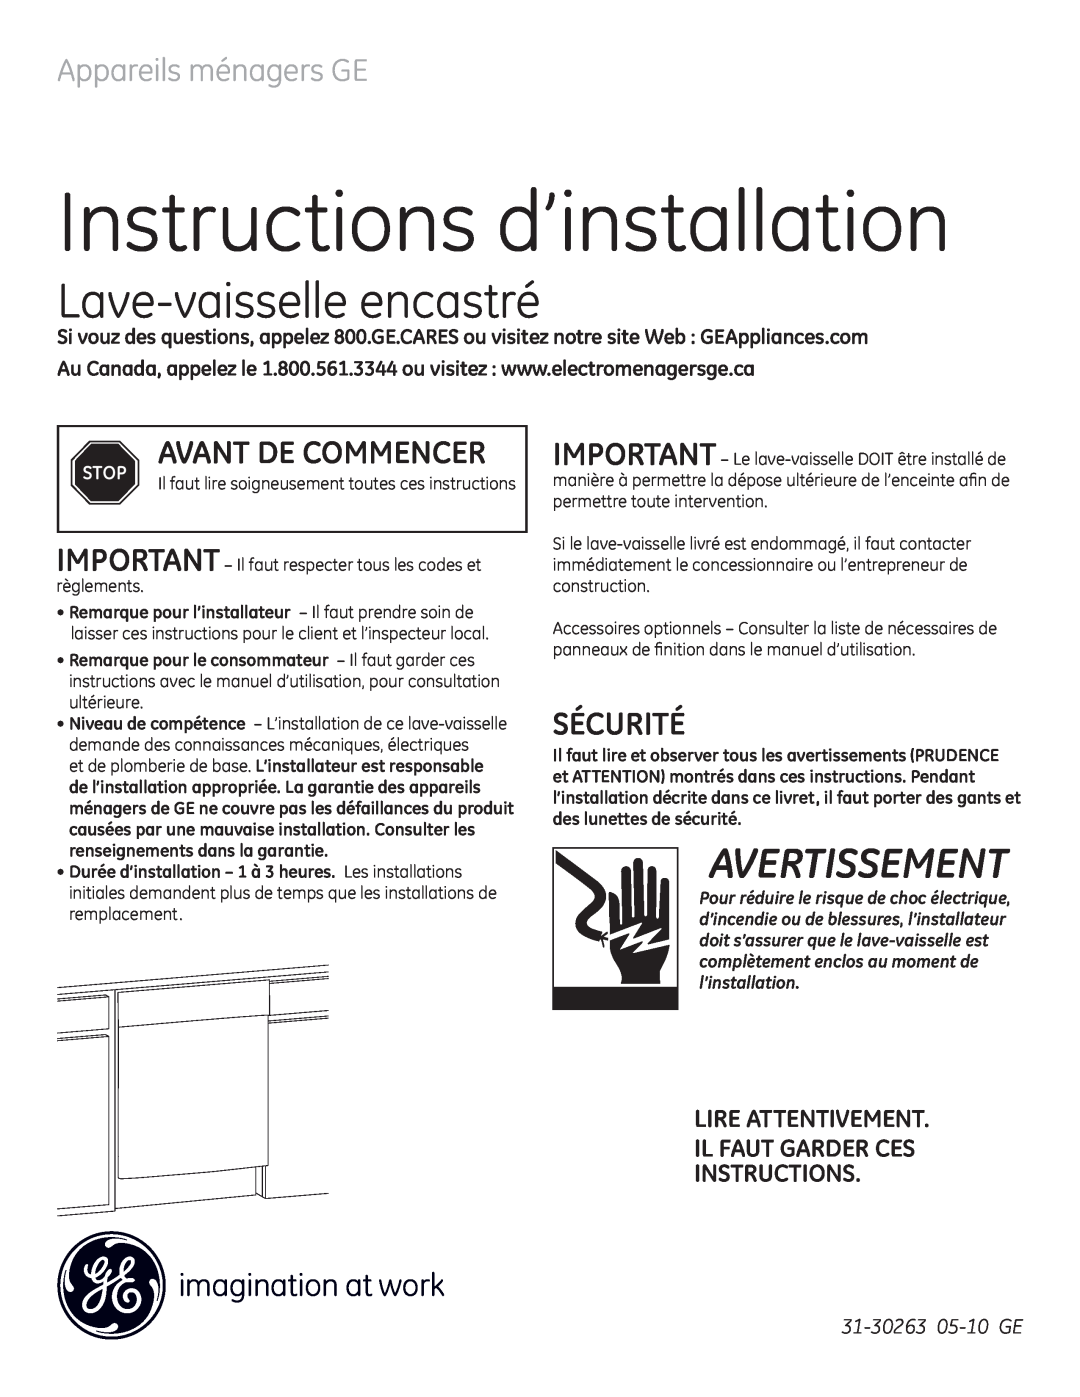 GE GE 31-30263 05-10 Instructions d’installation, Lave-vaisselleencastré, Avertissement, Appareils ménagers GE, Sécurité 